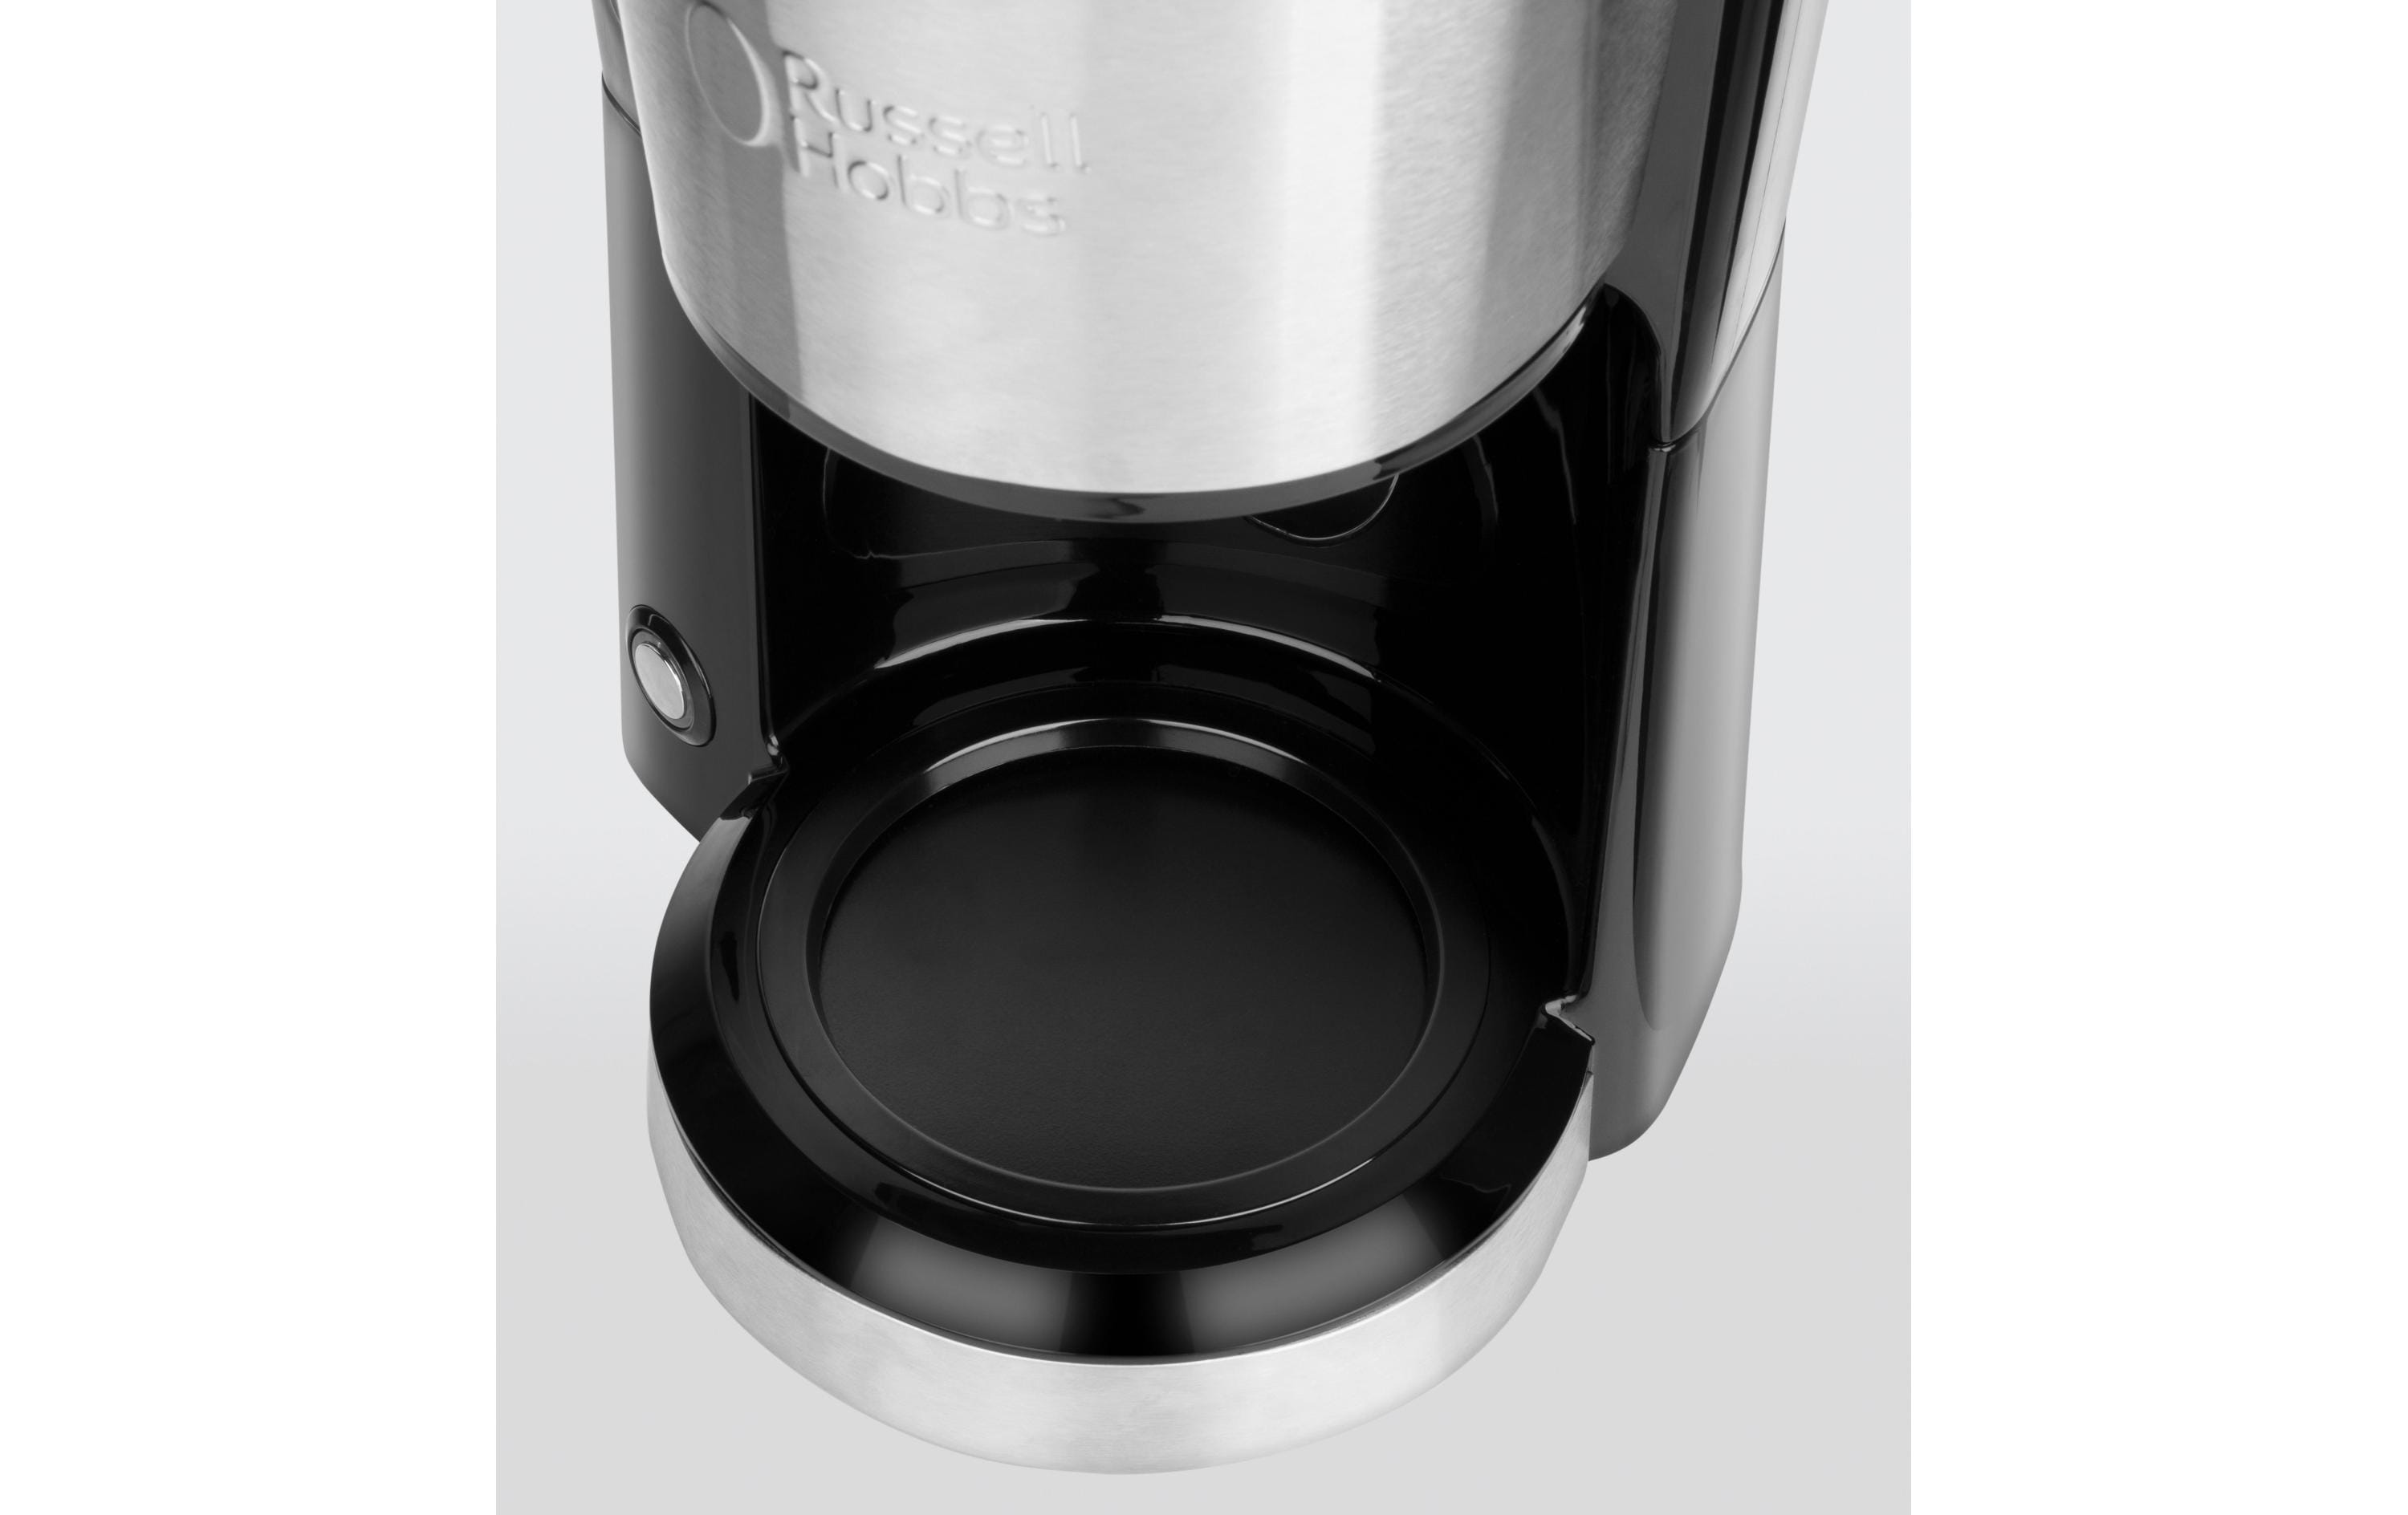 Russell Hobbs Filterkaffeemaschine Compact Home 24210-56 Schwarz